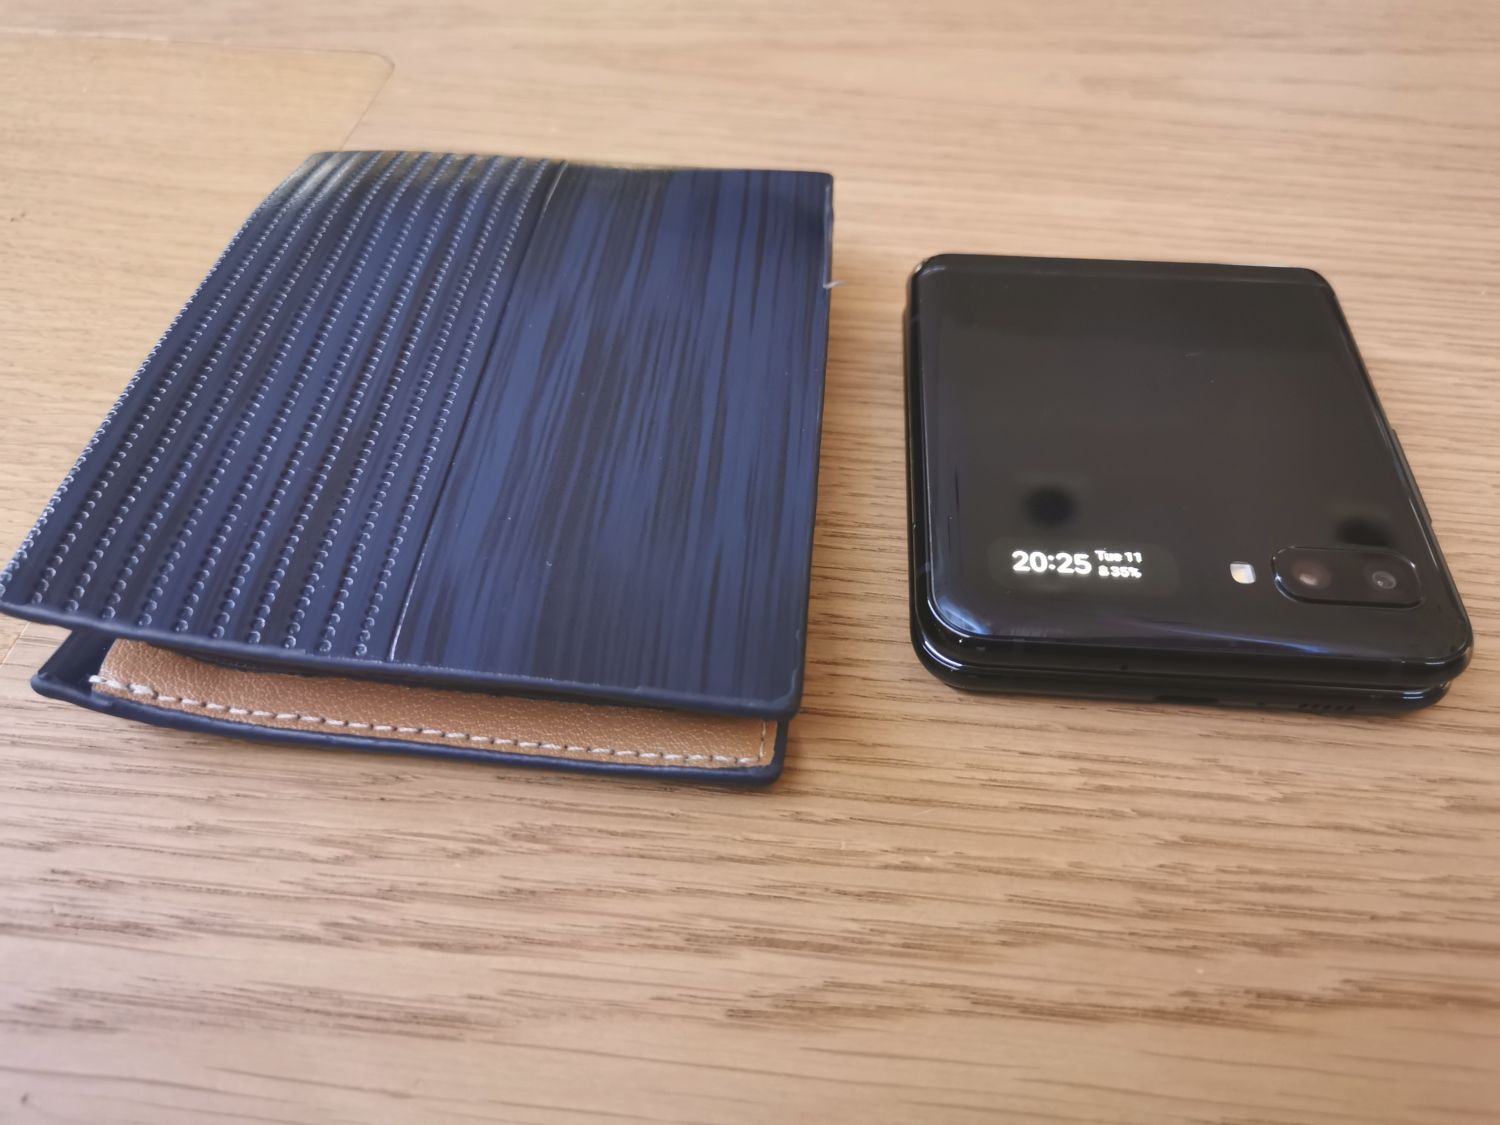 Samsung Galaxy Z Flip comparativa con billetera